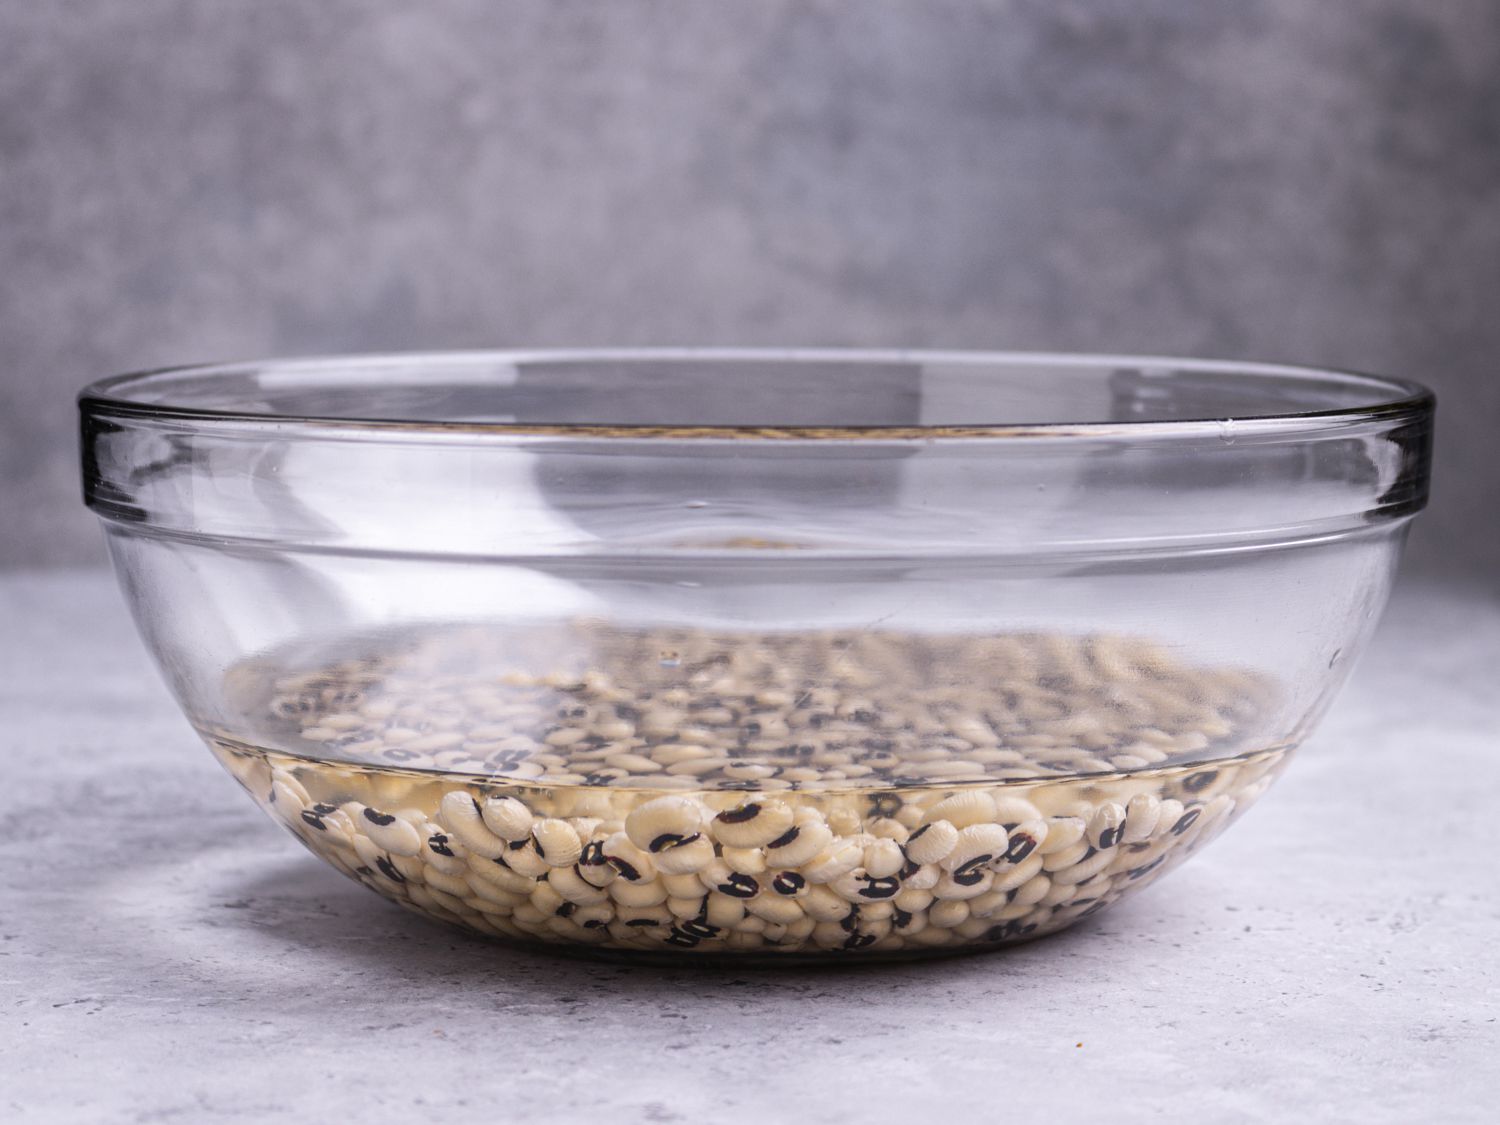 豌豆浸泡在一个装满水的玻璃碗的底部